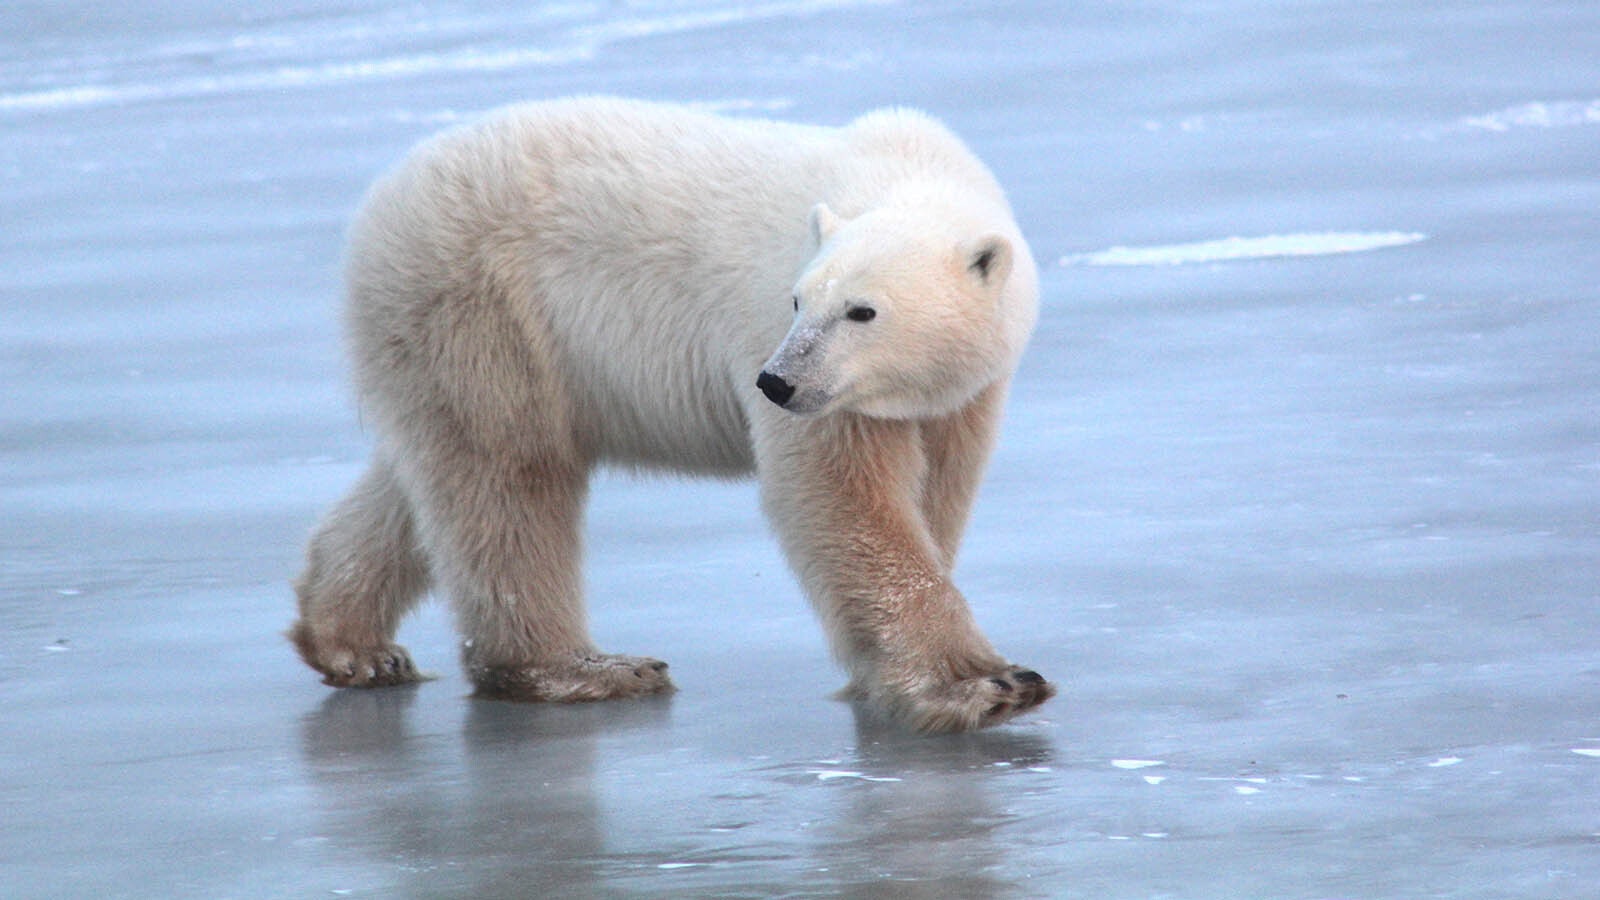 A polar bear walks across the ice.